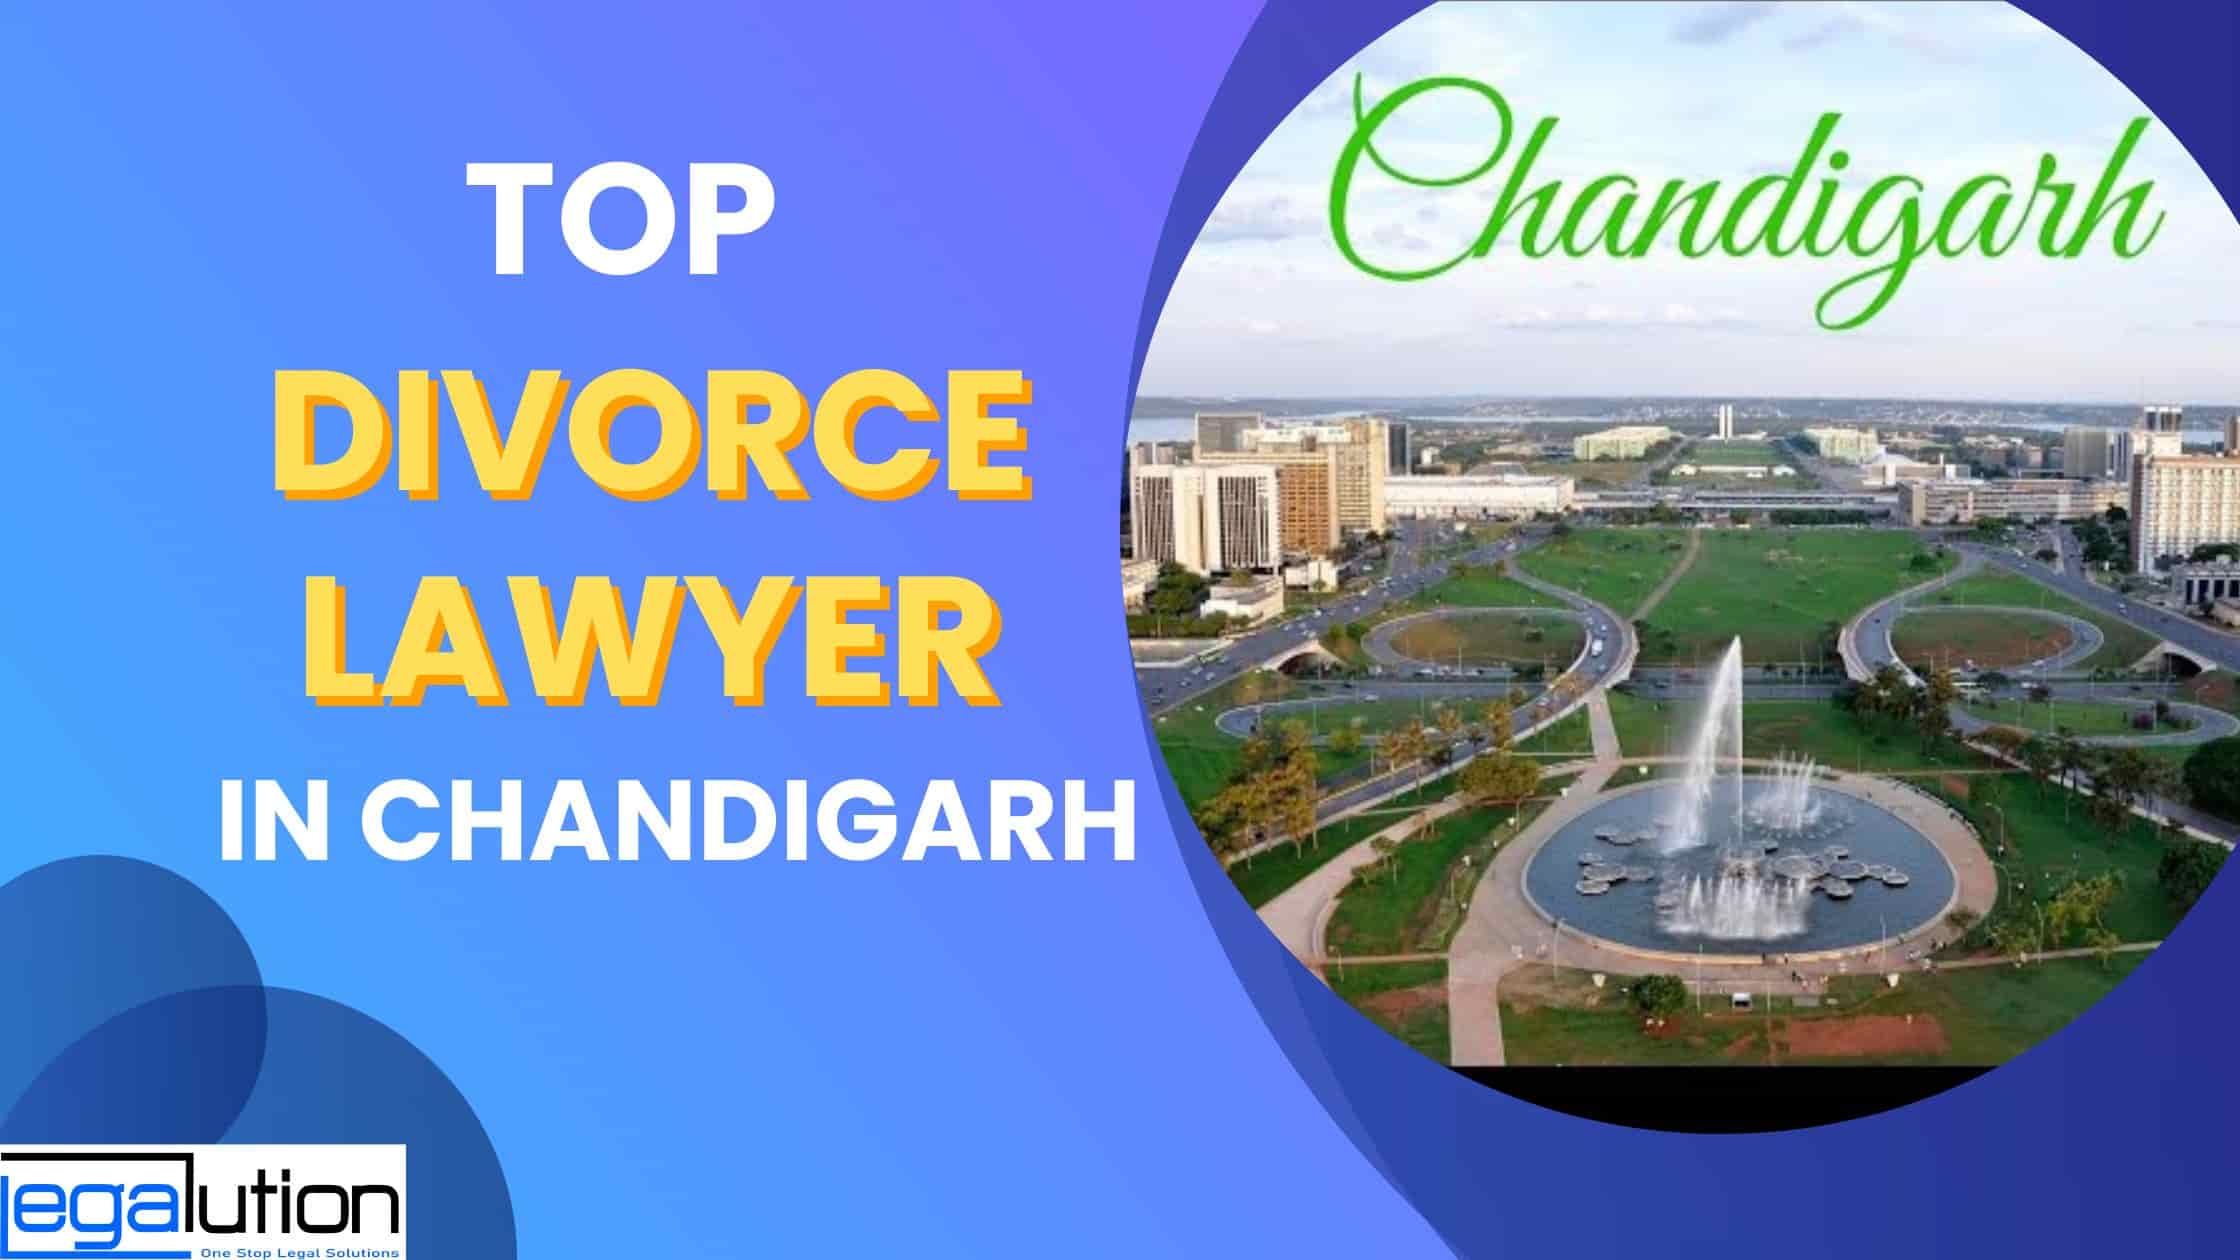 Best Divorce Lawyer in Chandigarh